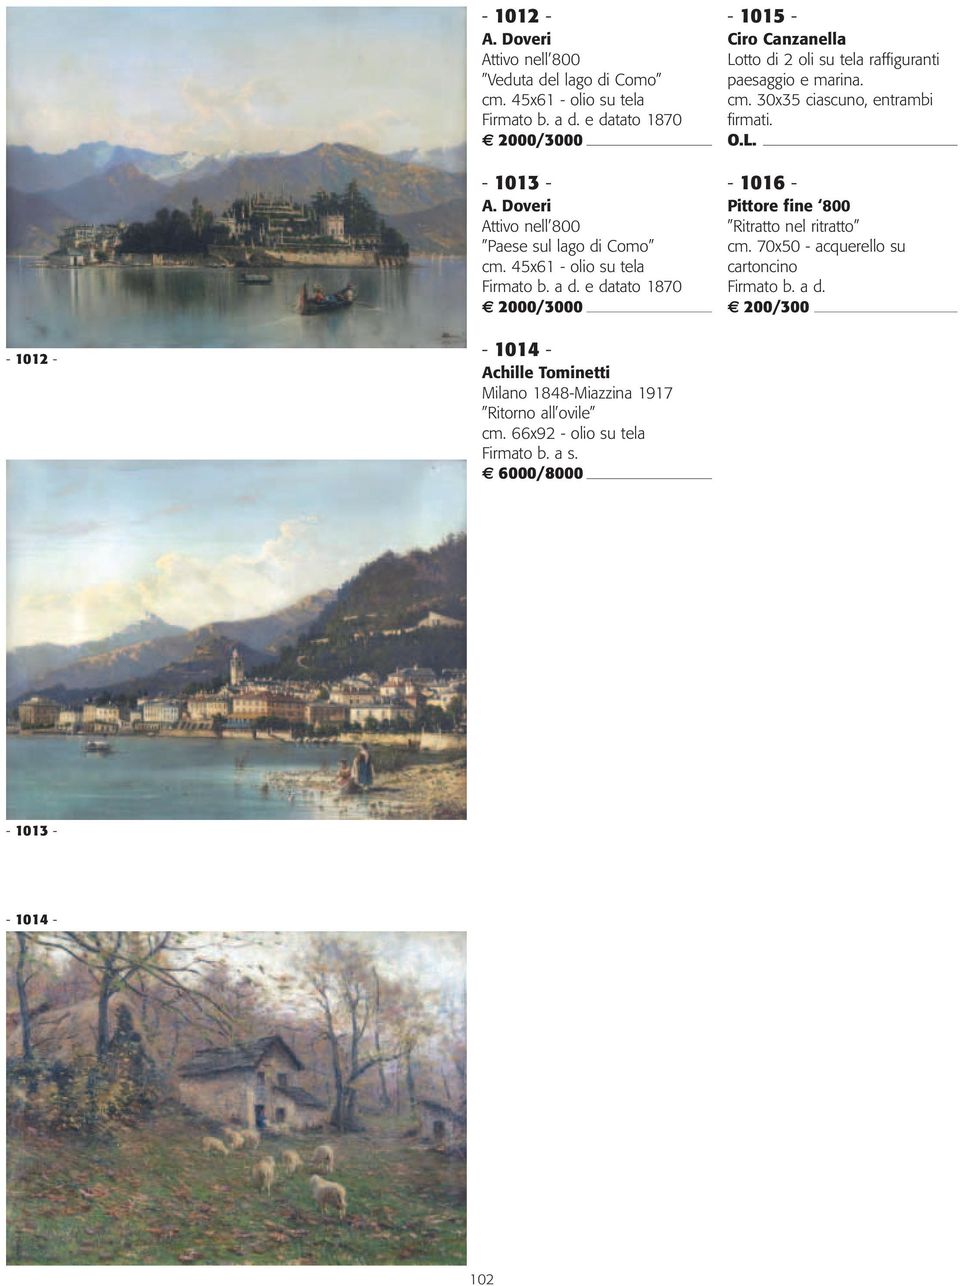 45x61 - olio su tela e datato 1870 2000/3000-1015 - Ciro Canzanella Lotto di 2 oli su tela raffiguranti paesaggio e marina. cm.